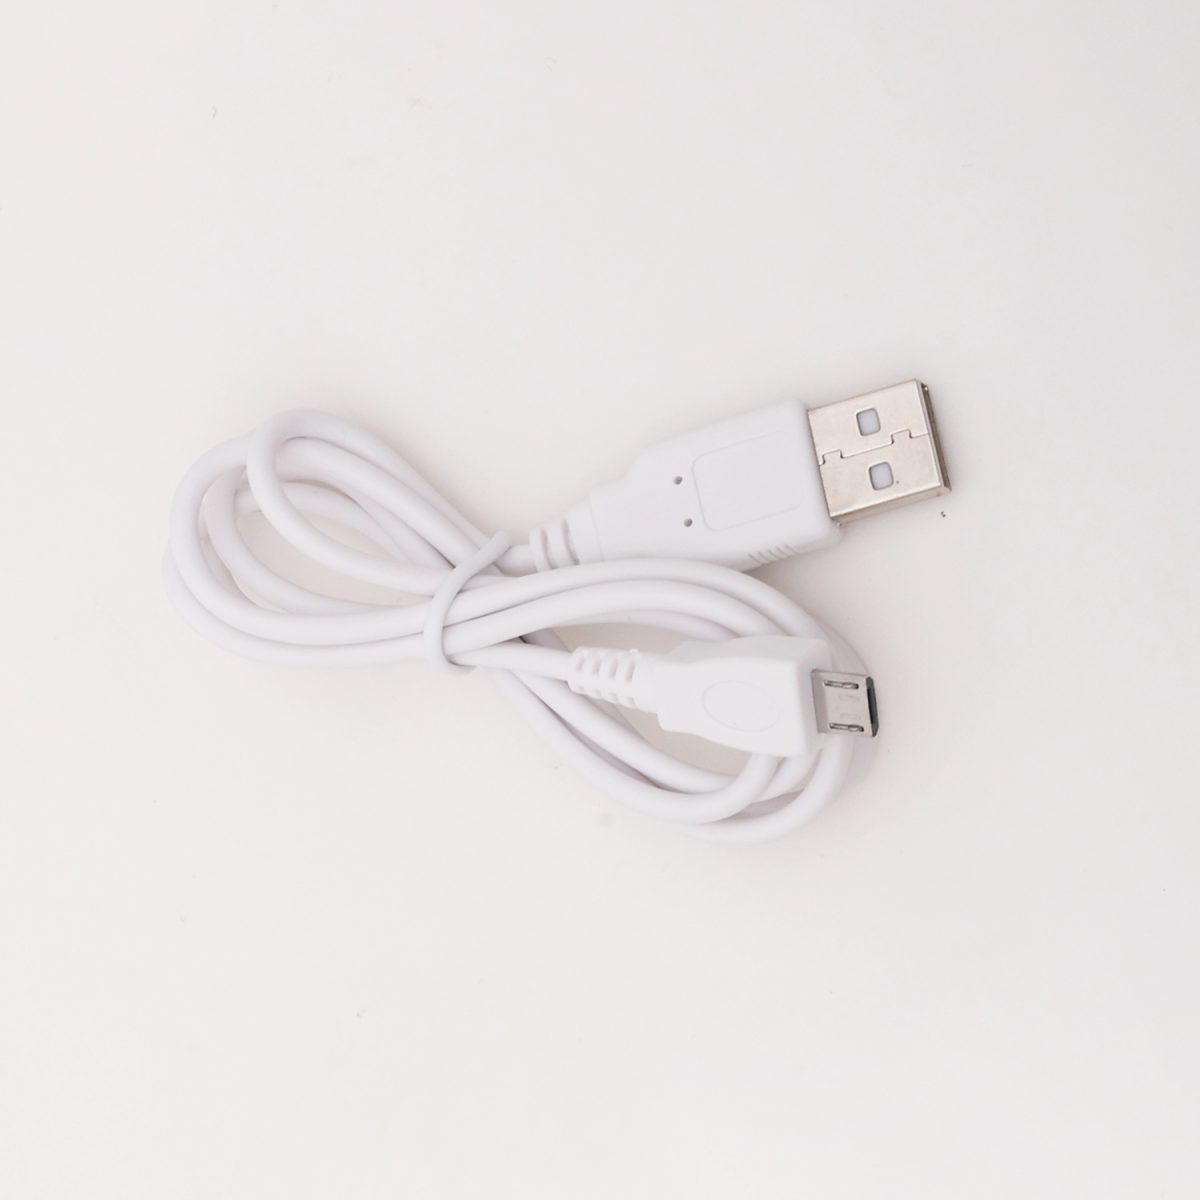 iFanShell S 充電用USBケーブル(microUSB)